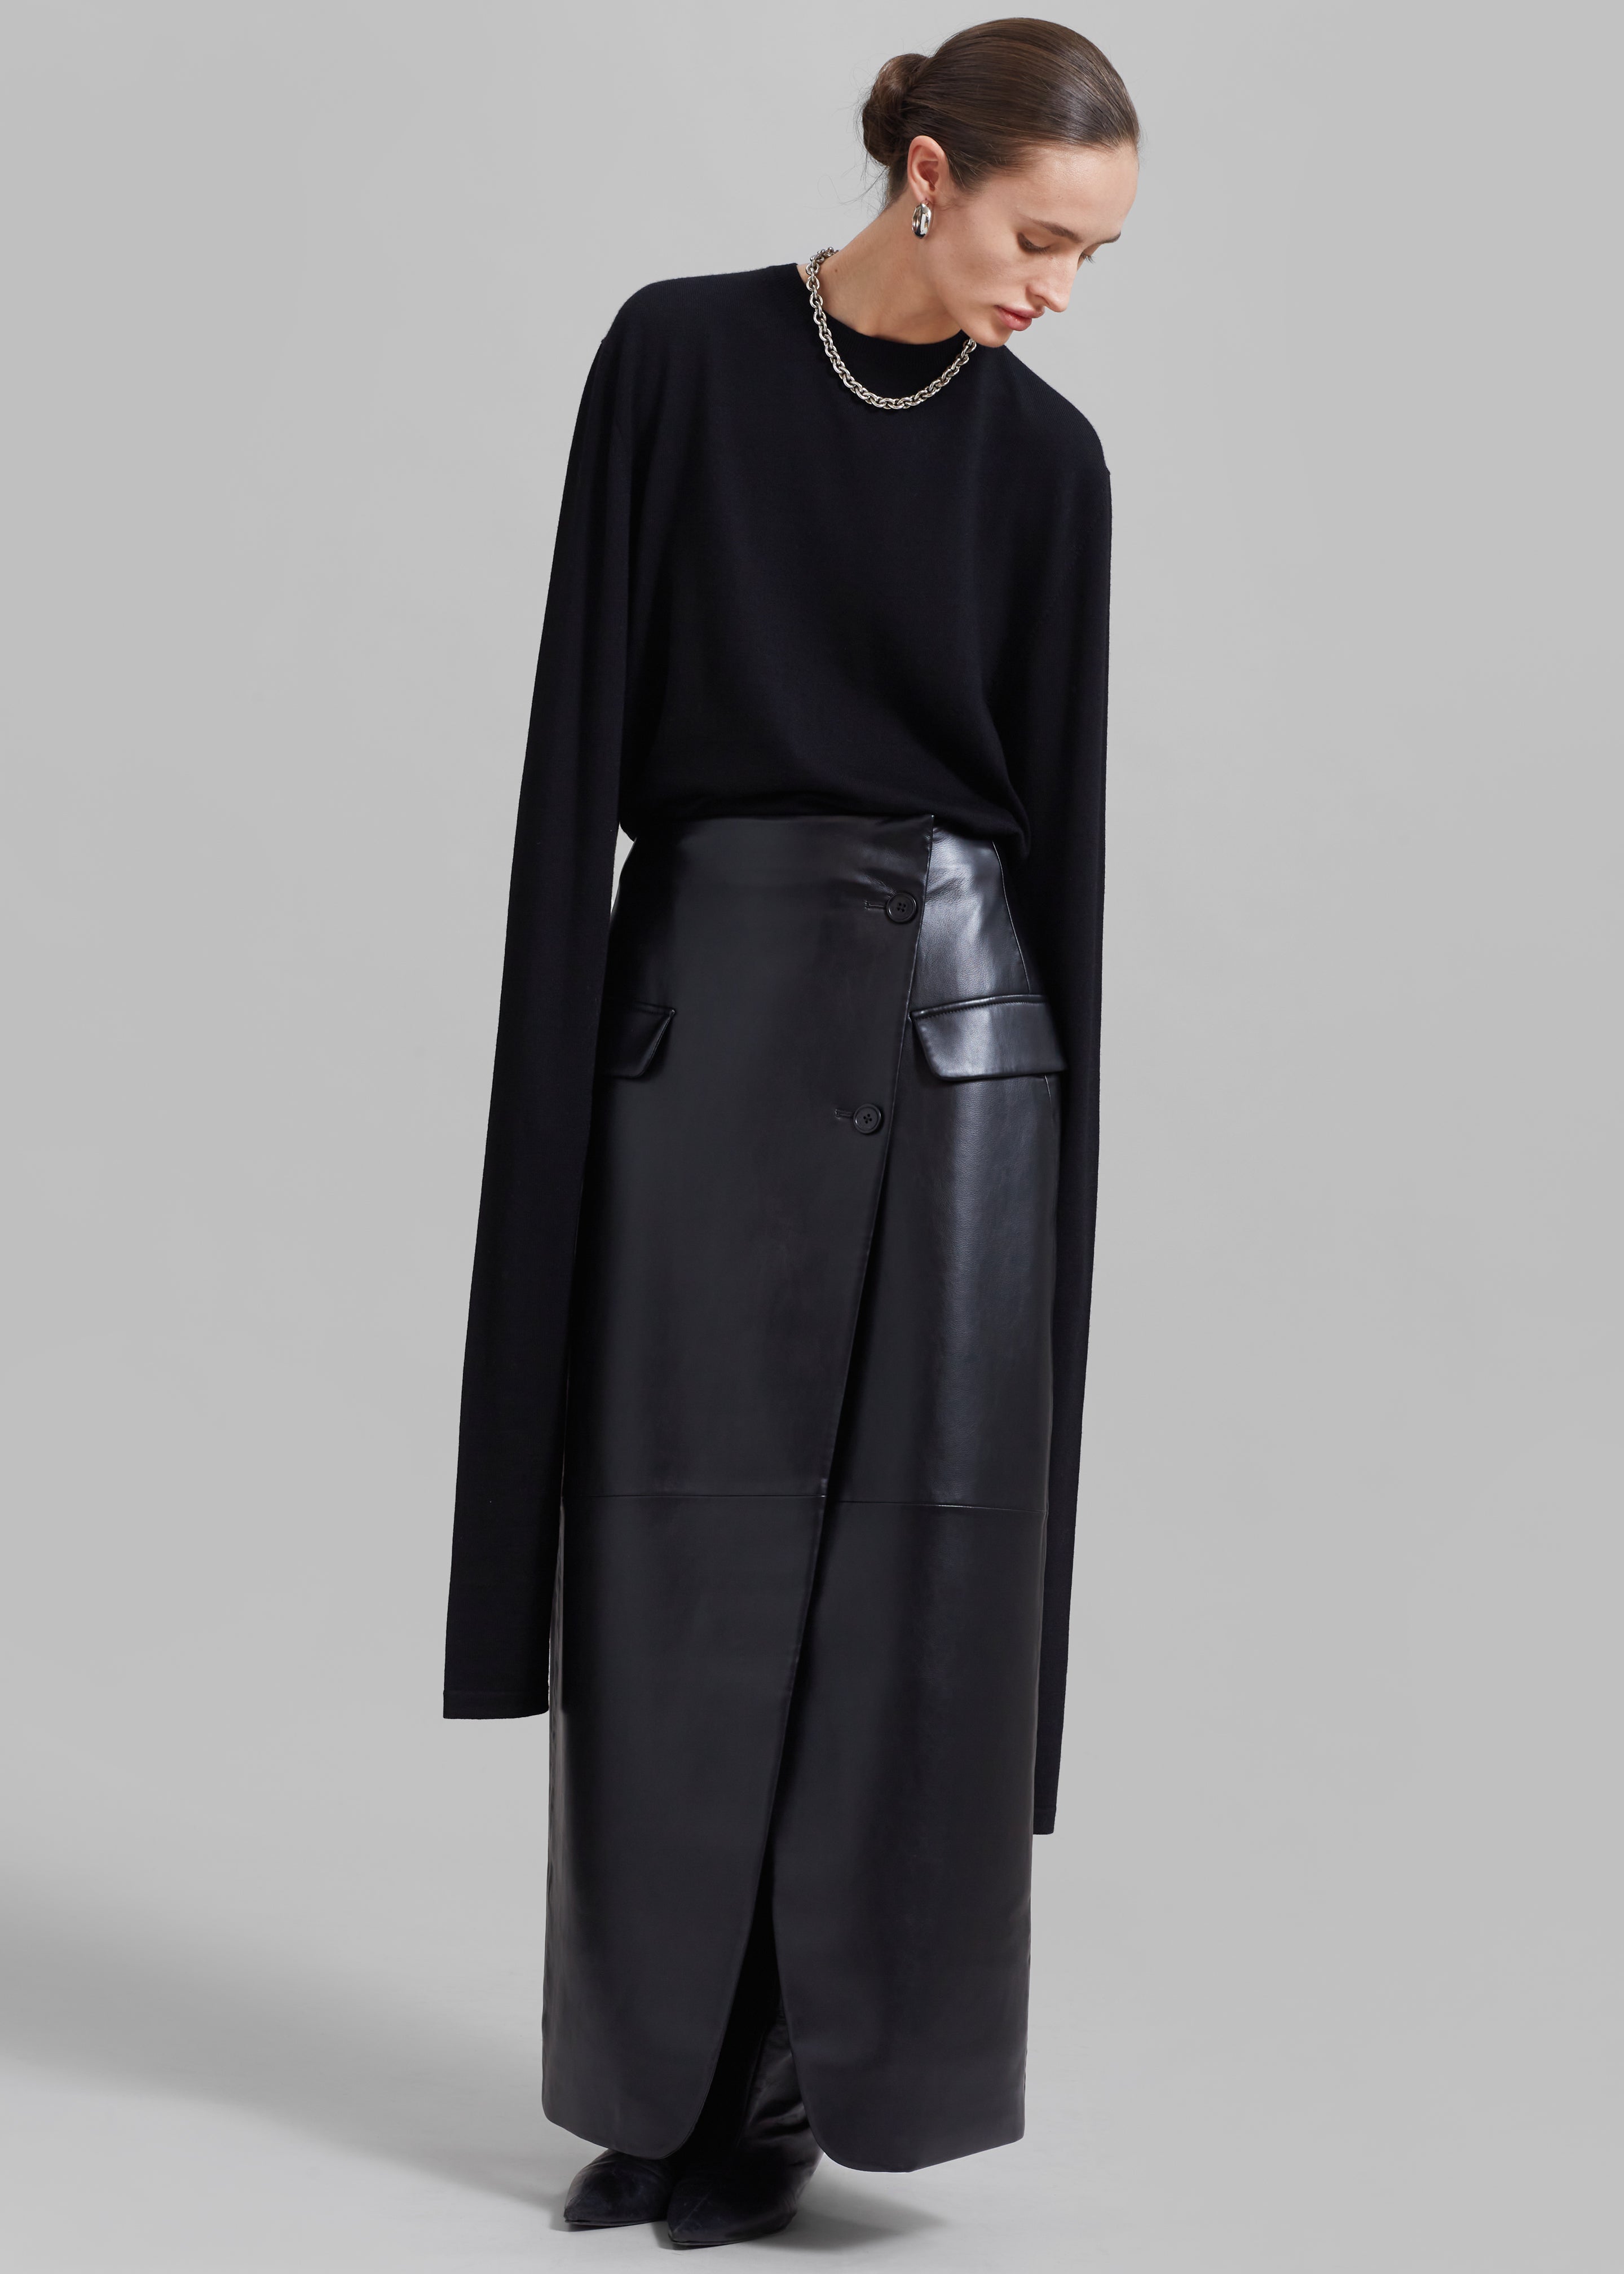 Nan Long Faux Leather Cross Skirt - Black - 7